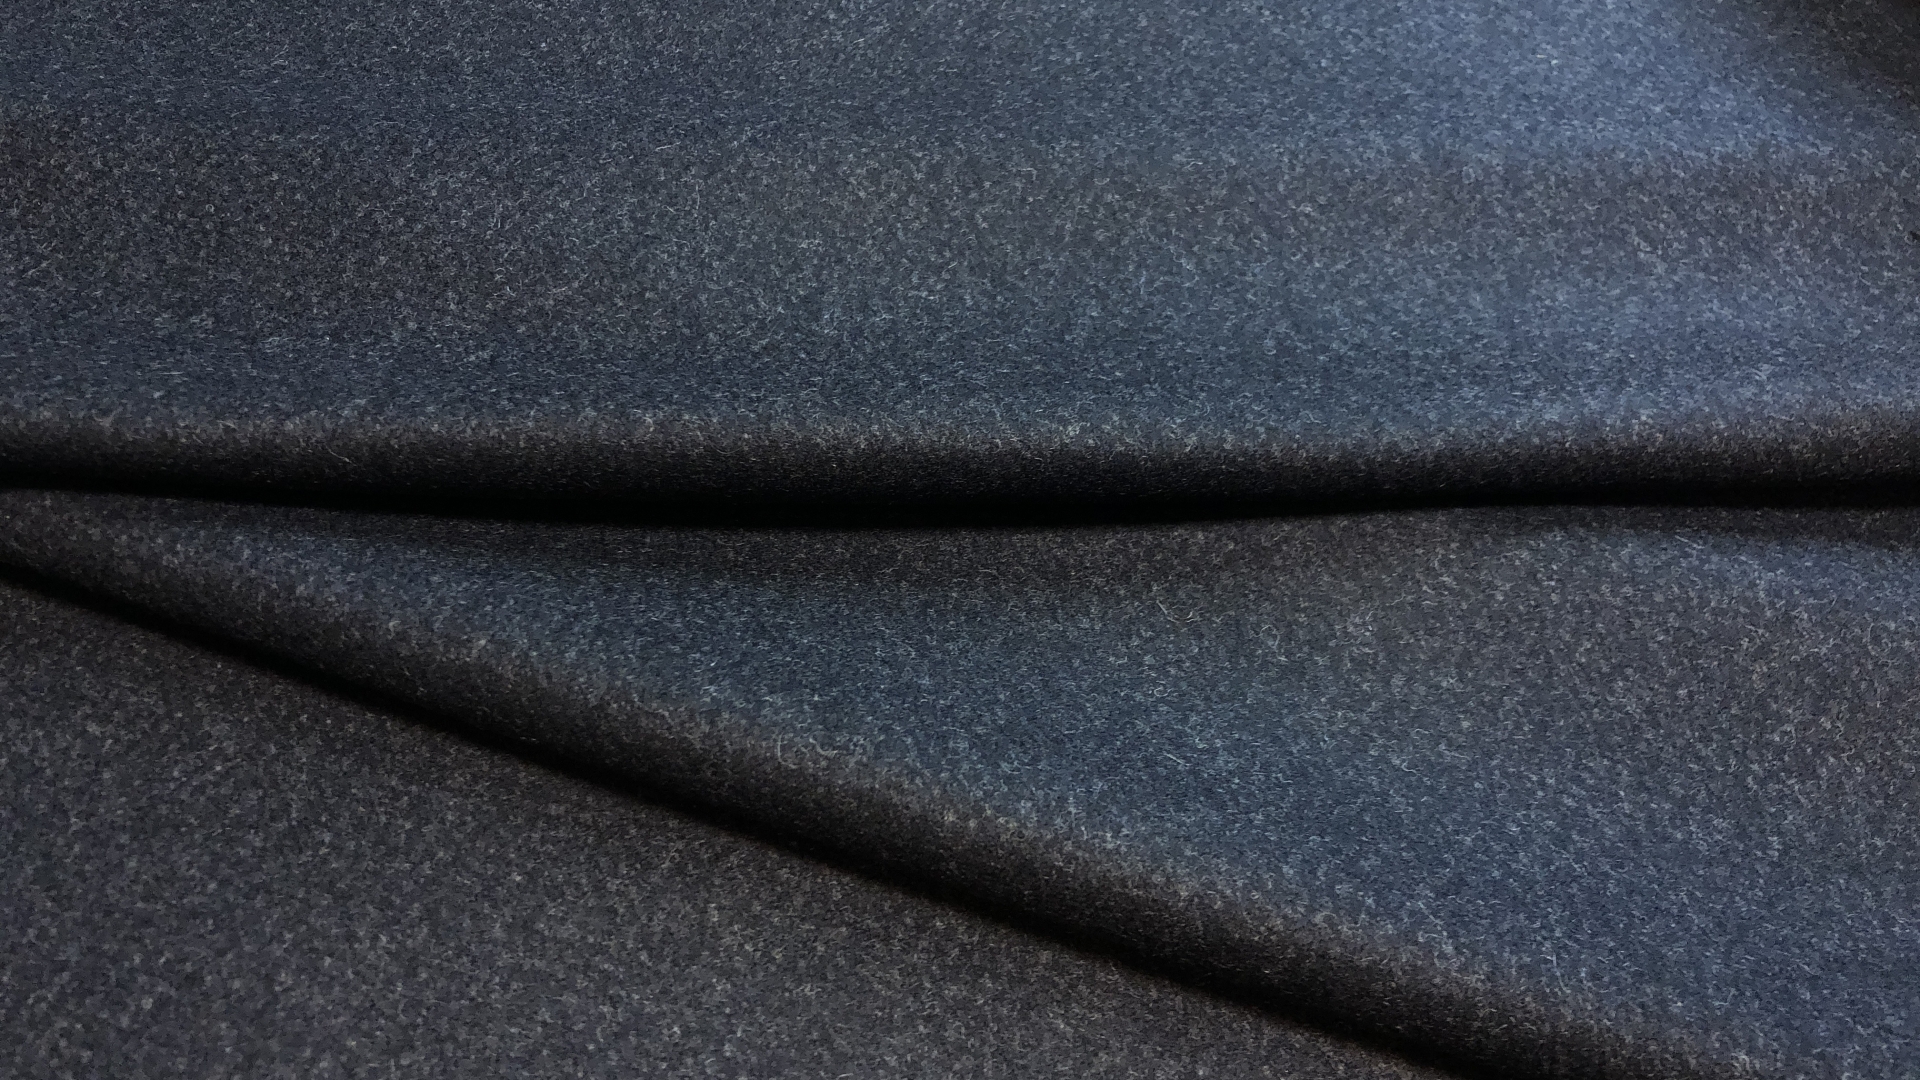 Облегчённая пальтовая ткань приглушенного серого цвета с синей каплей. Плотность 560гр. Поверхность полотна с лоском, не колючее. На демисезонное пальто либо очень теплый пиджак или юбку. Также можно сшить очень теплые брюки на мороз.